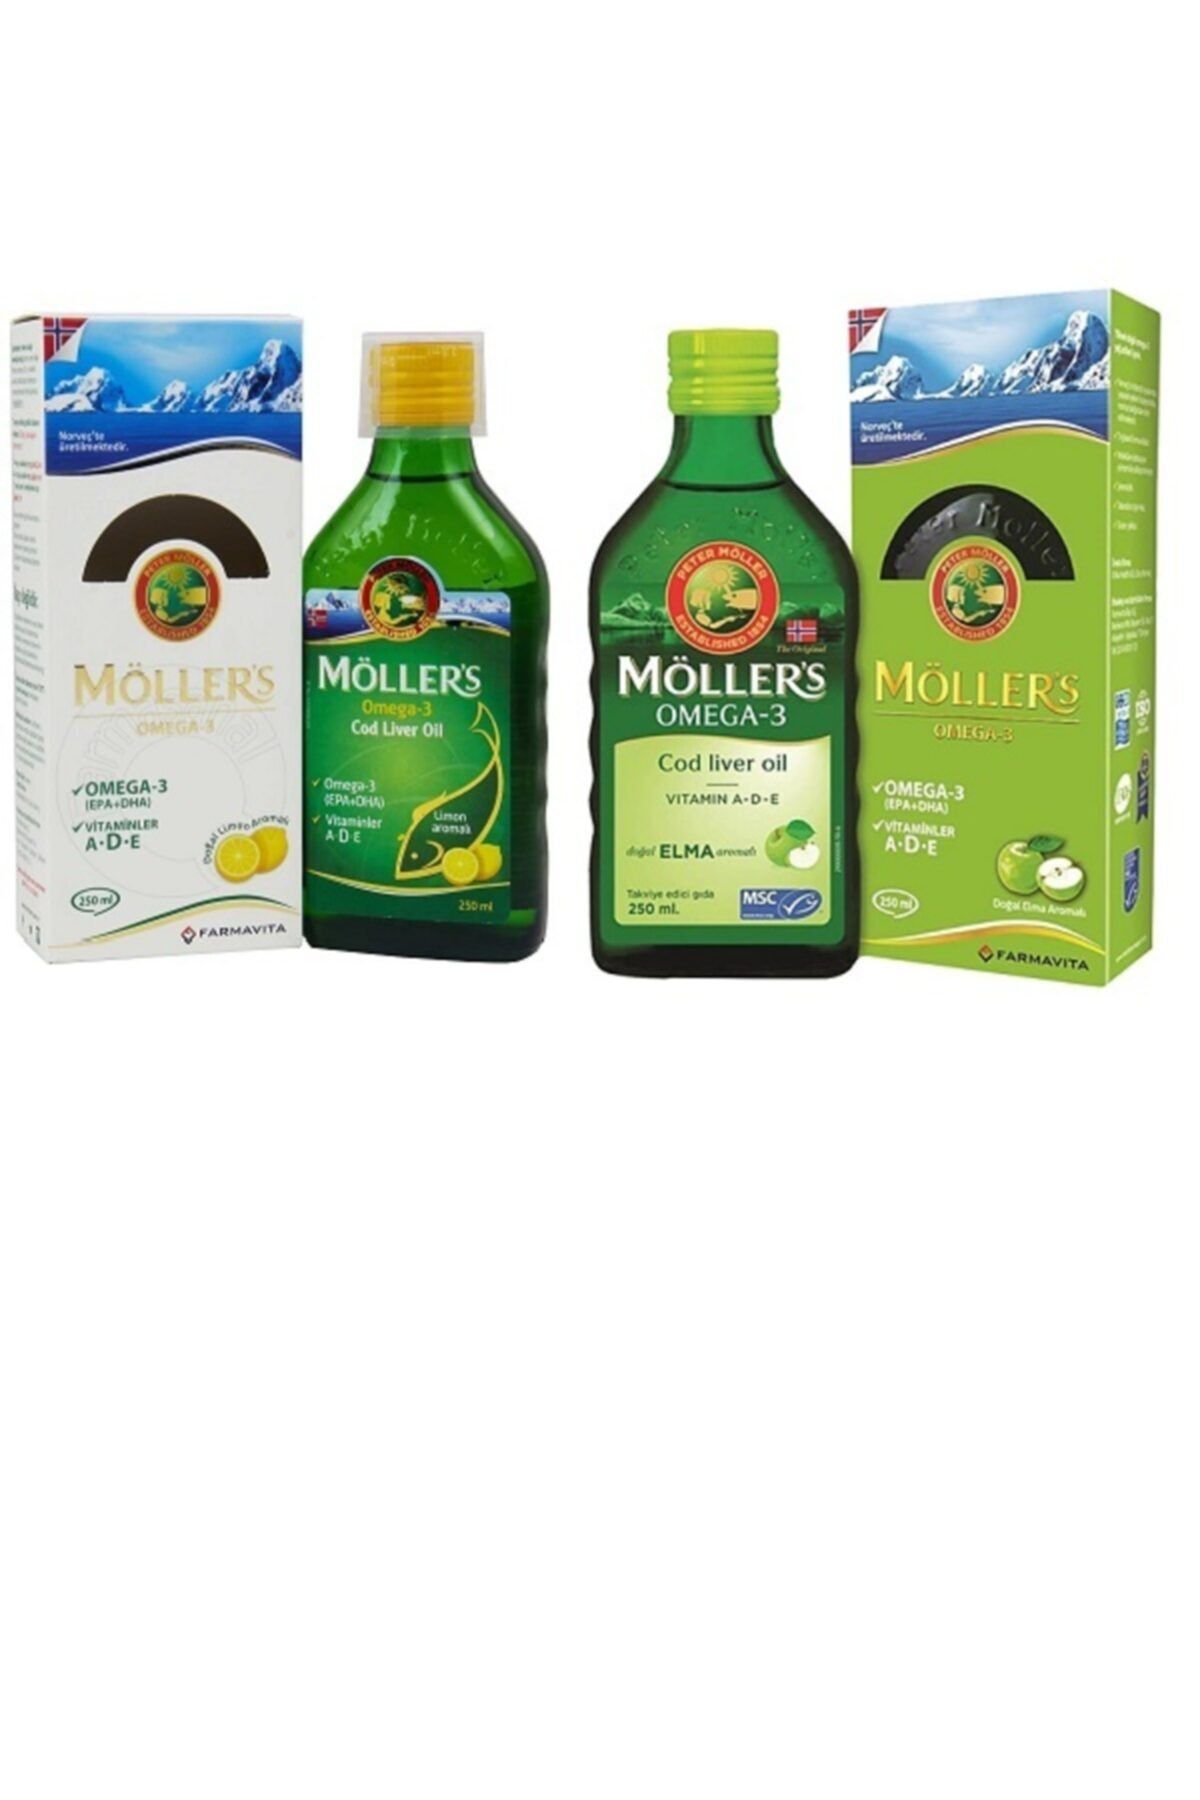 Mollers Hem Çocuklar Hem Yetişkinlerin Kullanabileceği Balık Yağı Elma Ve Limon Aromalı 250mlx2